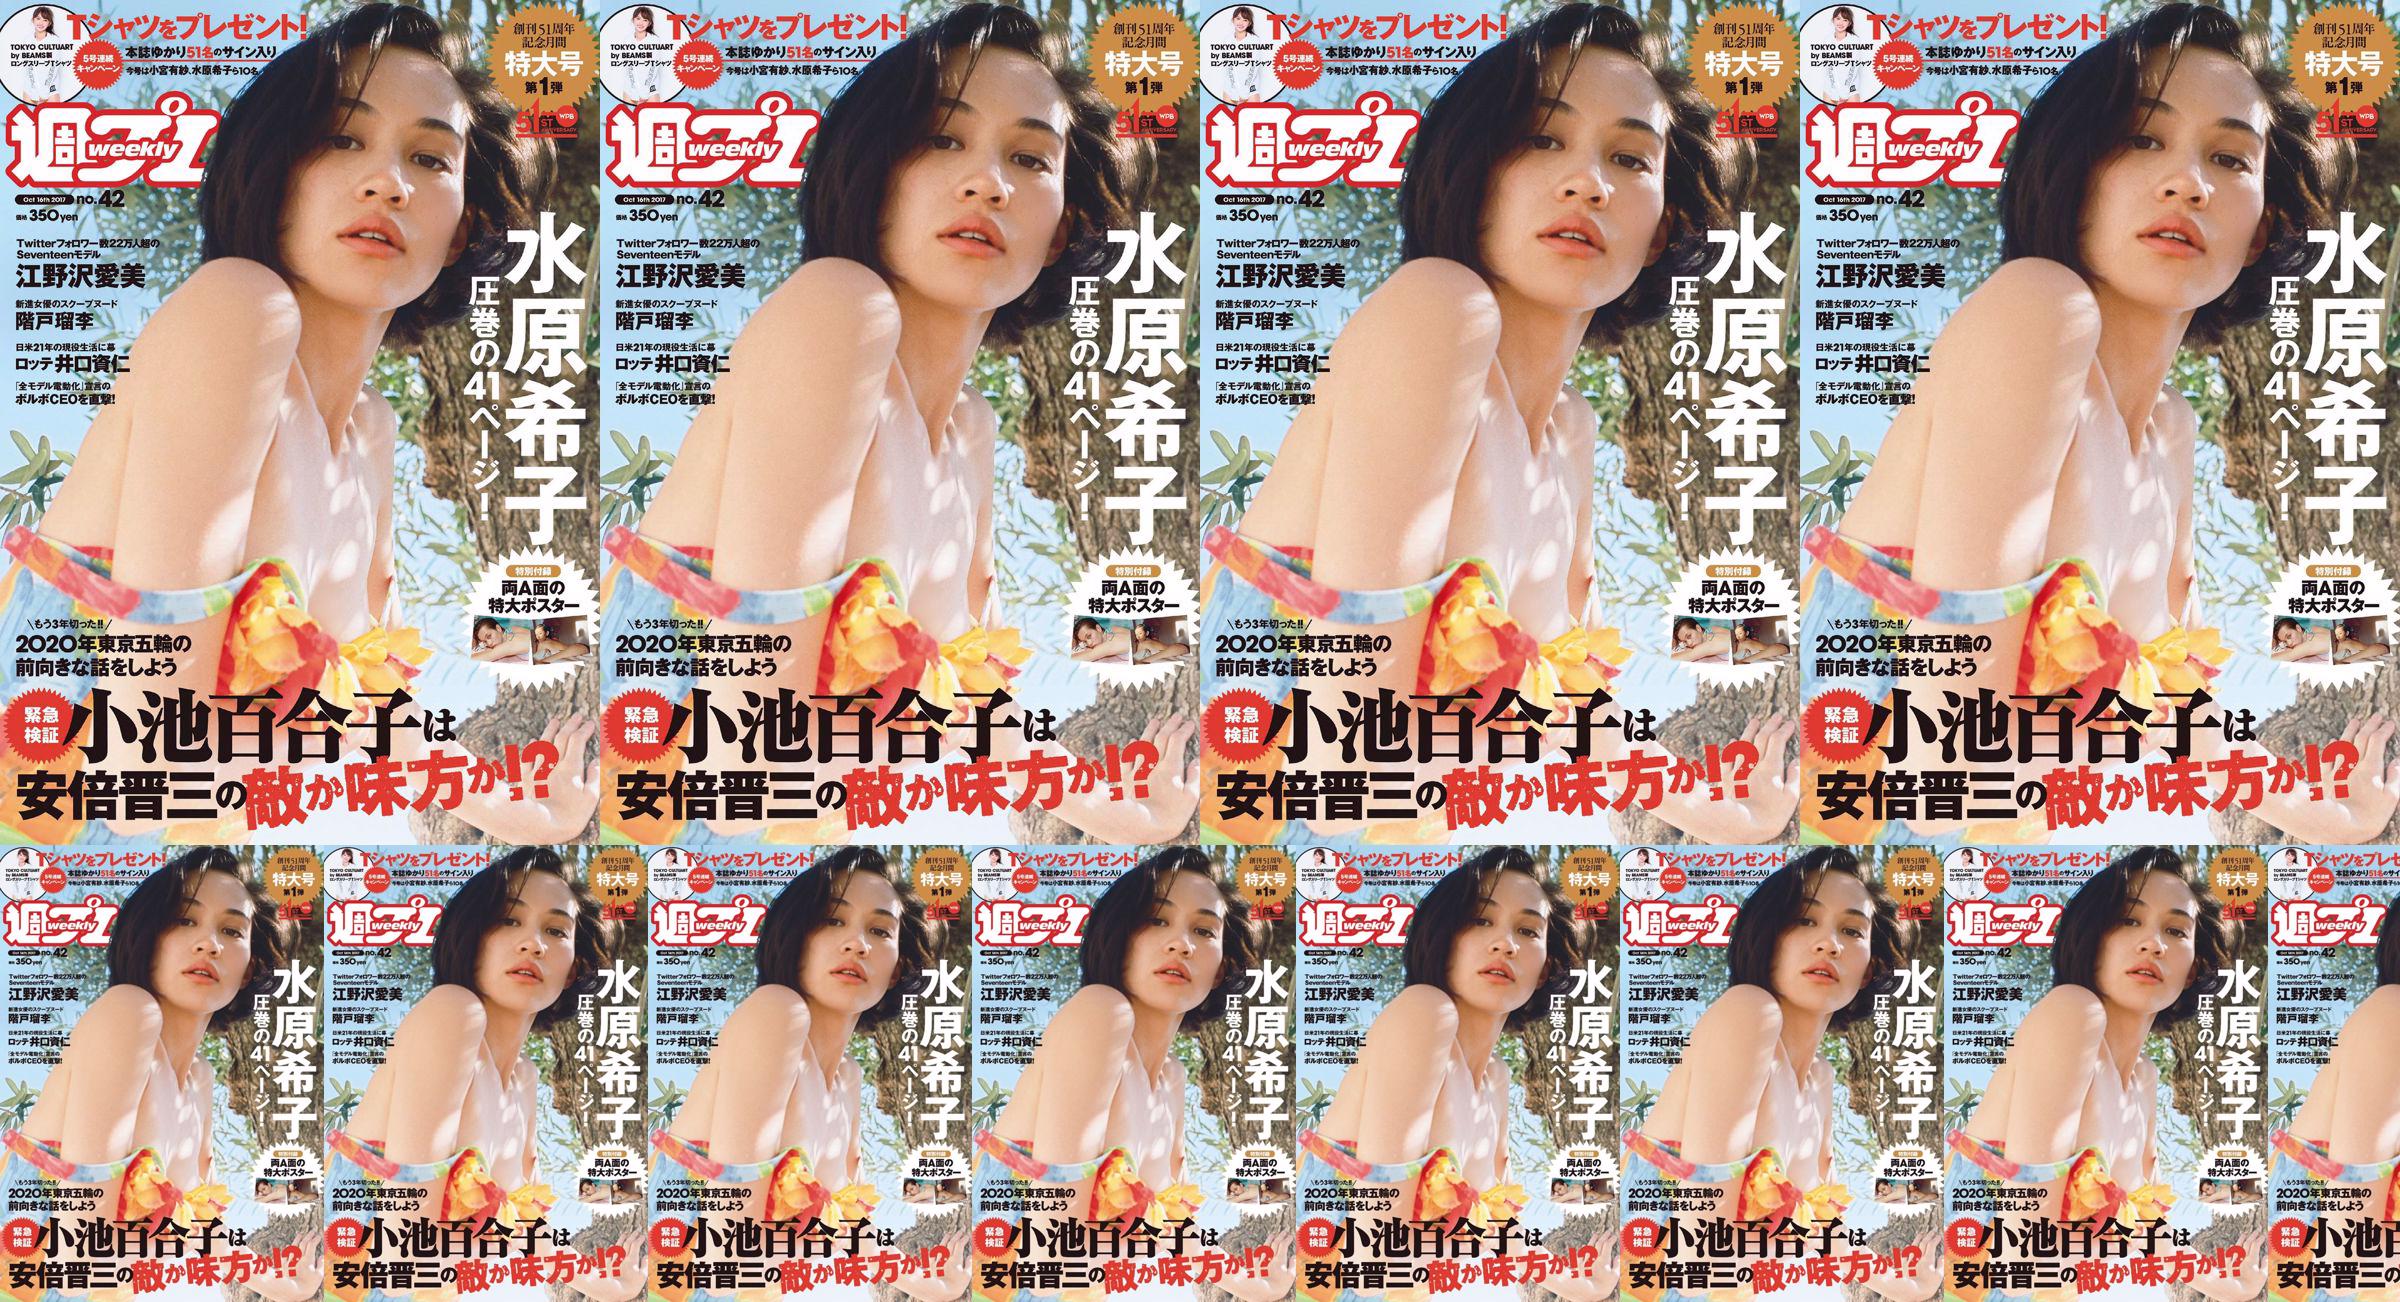 Kiko Mizuhara Manami Enosawa Serina Fukui Miu Nakamura Ruri Shinato [Weekly Playboy] 2017 No.42 Photo Magazine No.08413b Pagina 1